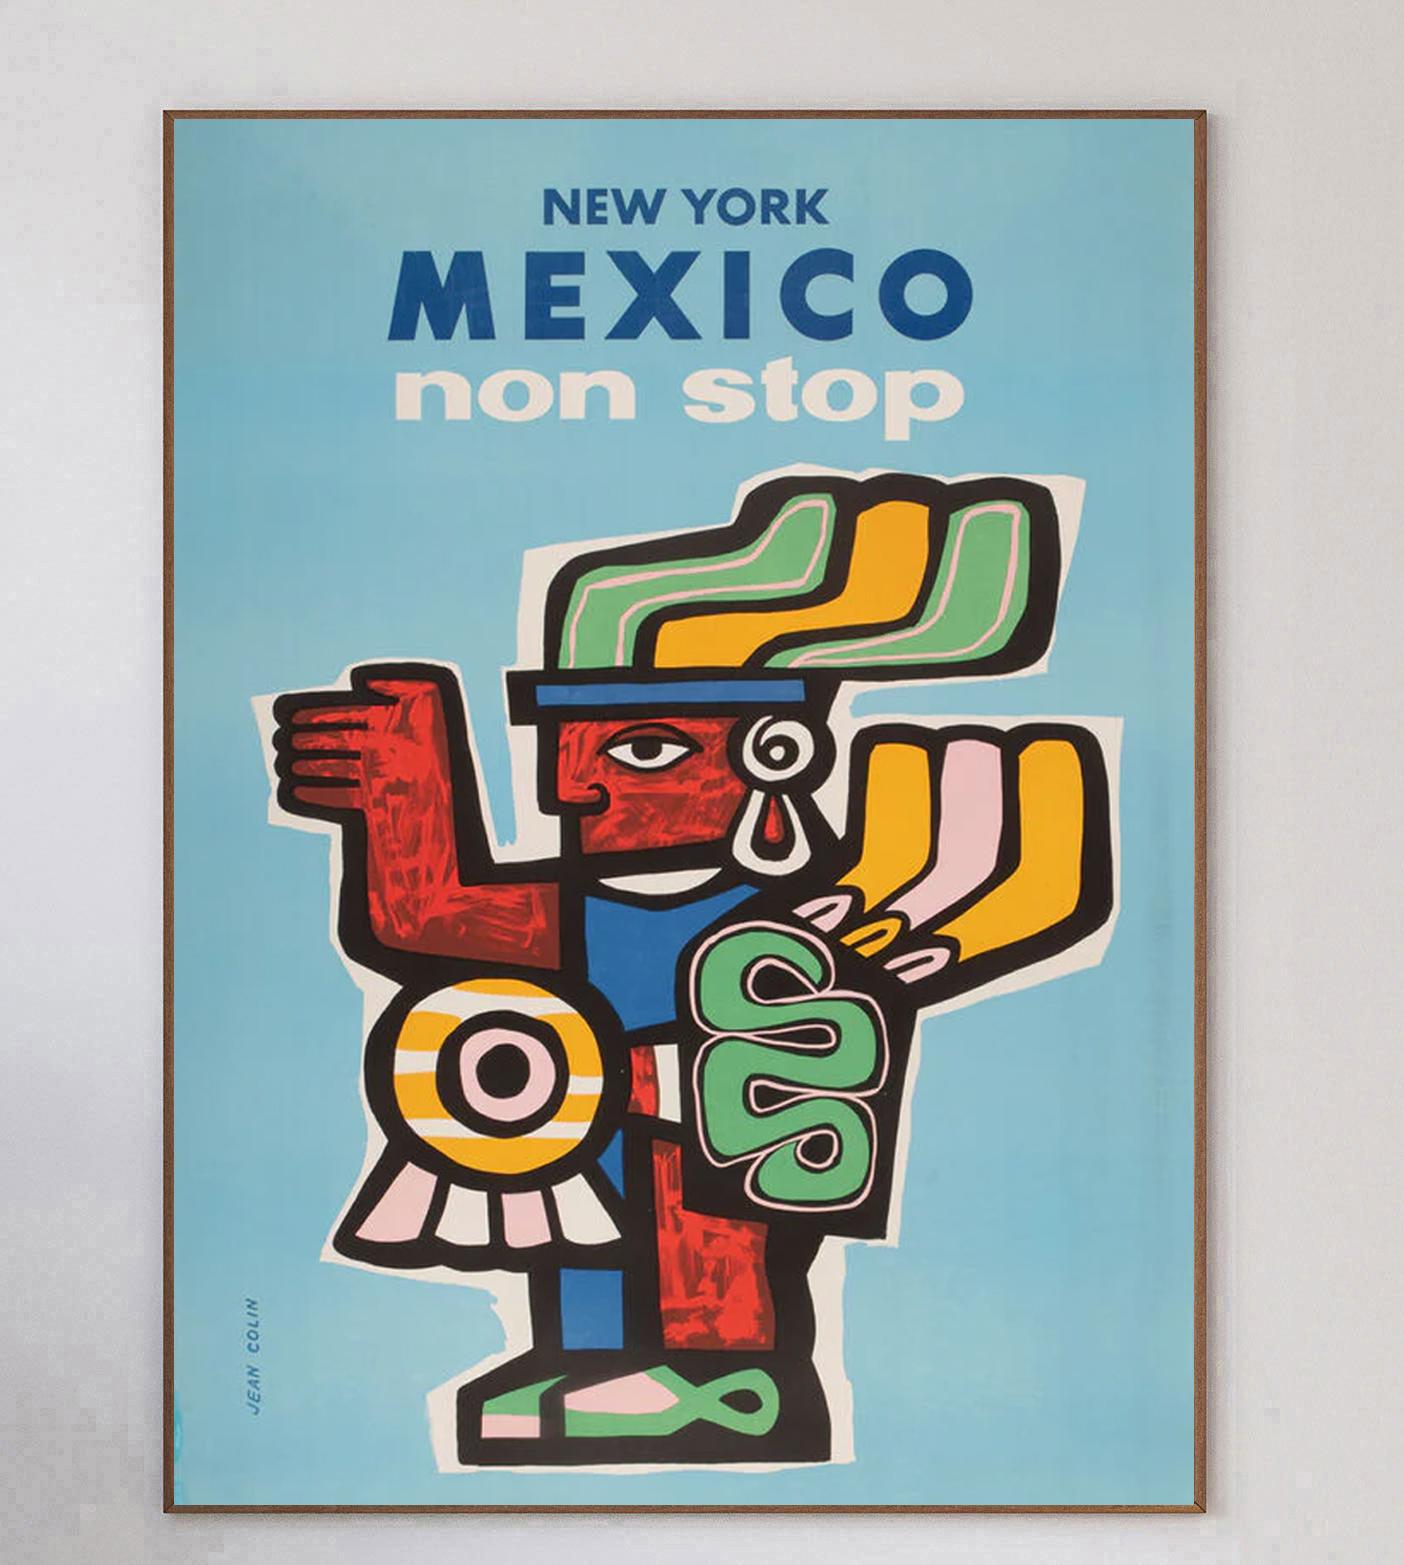 Dieses atemberaubende Plakat des großen französischen Künstlers Jean Colin wurde 1960 geschaffen, um für Non-Stop-Flugverbindungen von New York nach Mexiko zu werben. Dieses Stück, das eine Maya-Figur im typischen Condit-Stil darstellt, hat